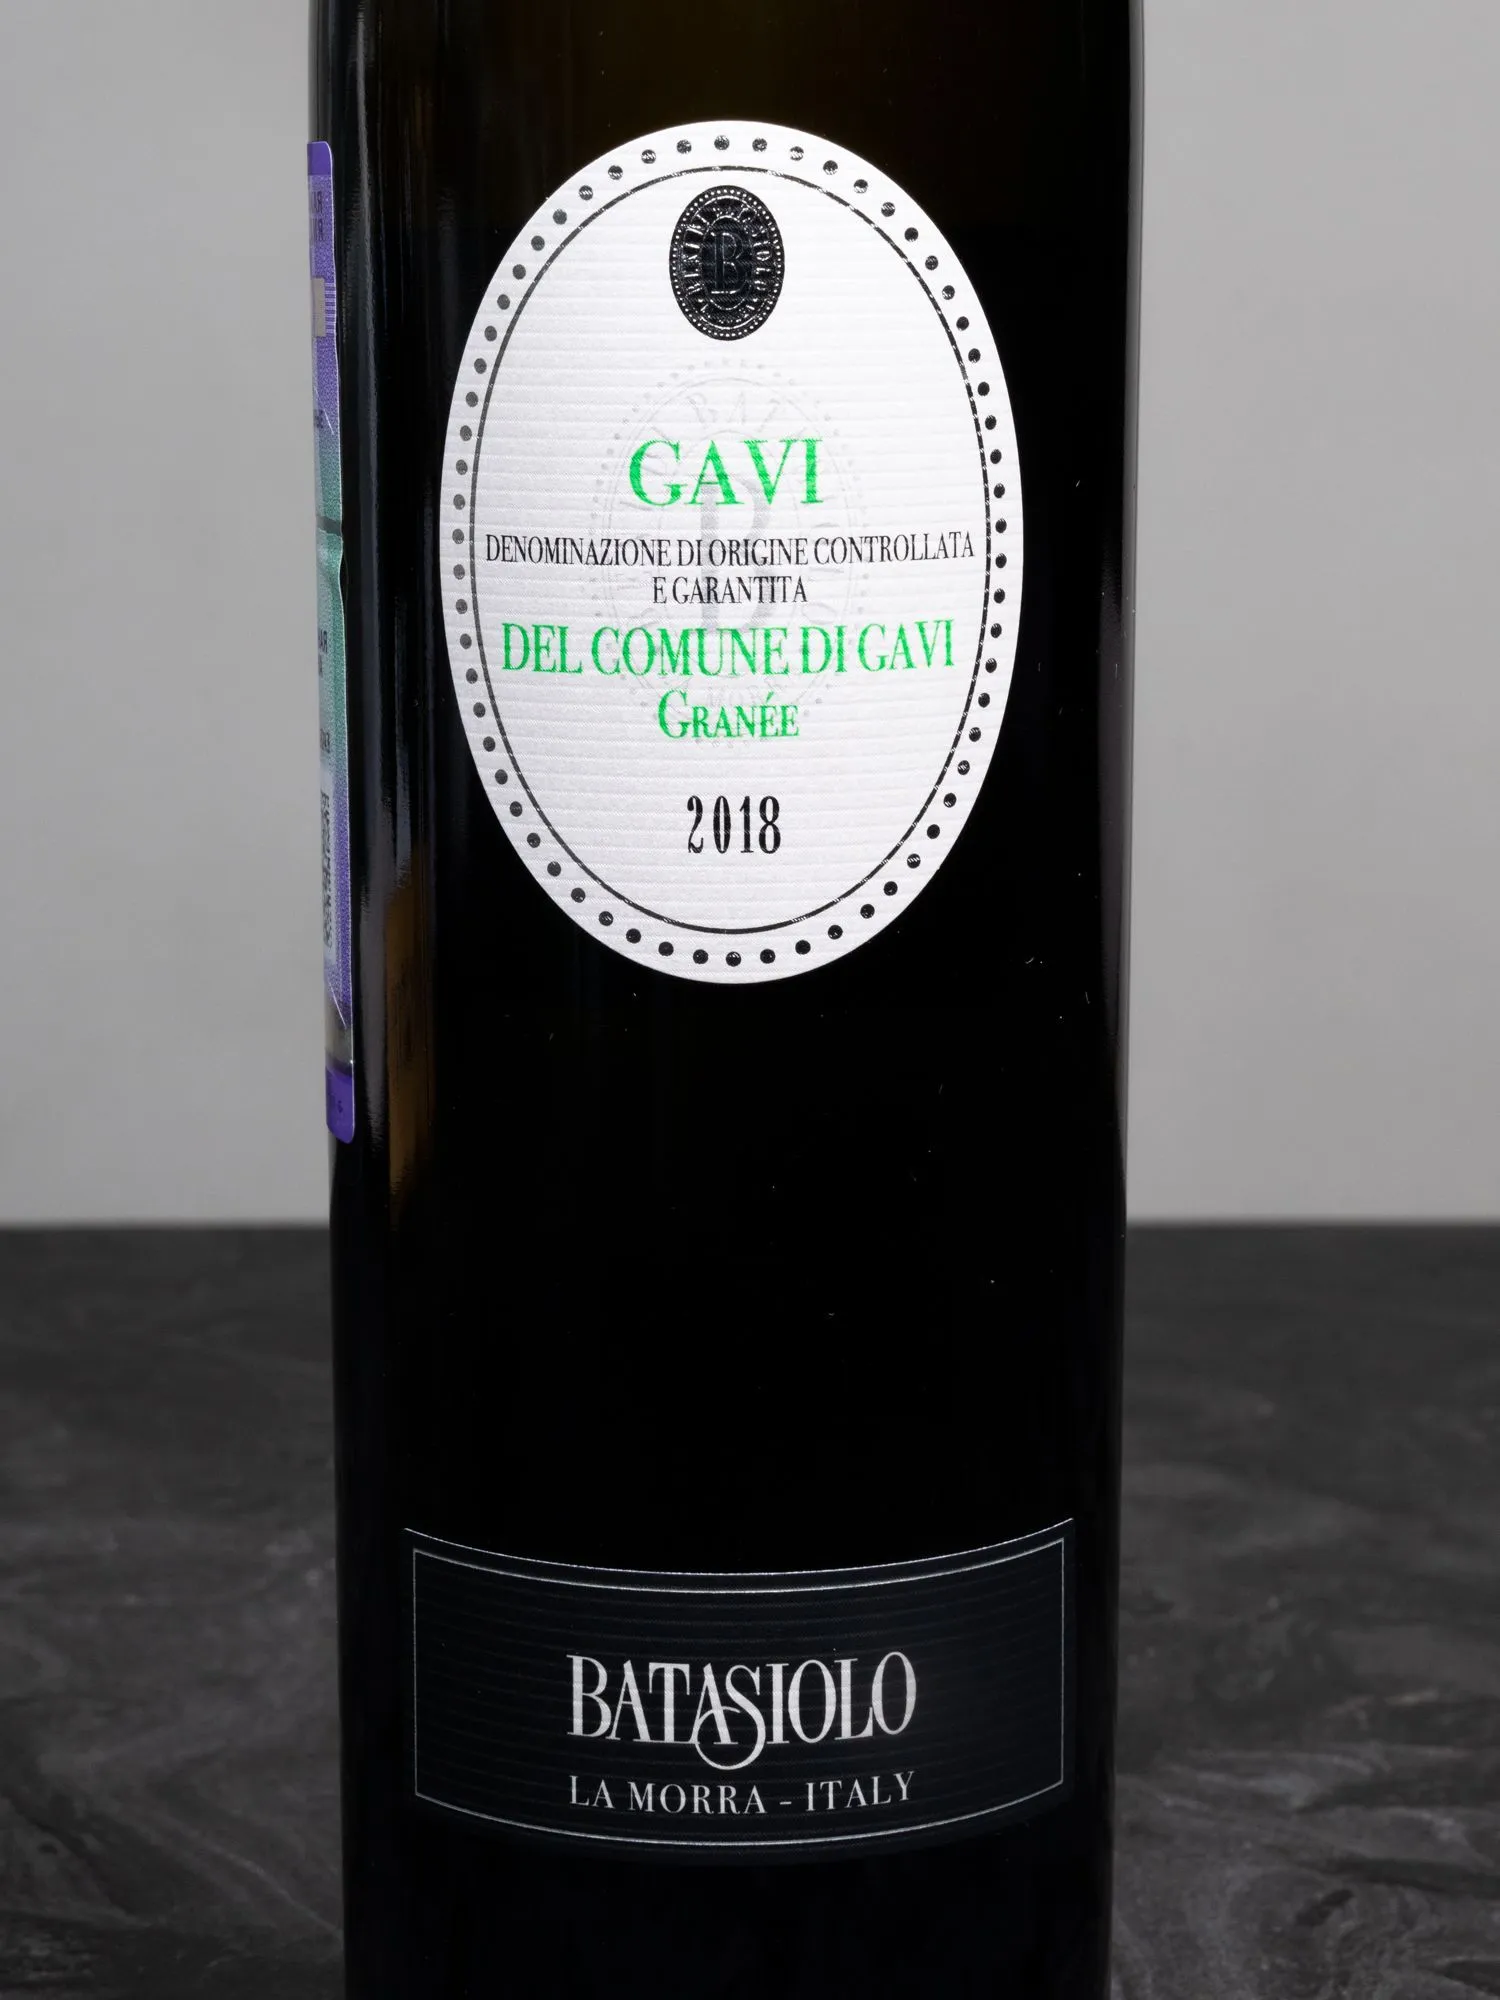 Вино Batasiolo Granee Gavi del Comune di Gavi / Батазиоло Гранэ Гави дель Комуне ди Гави